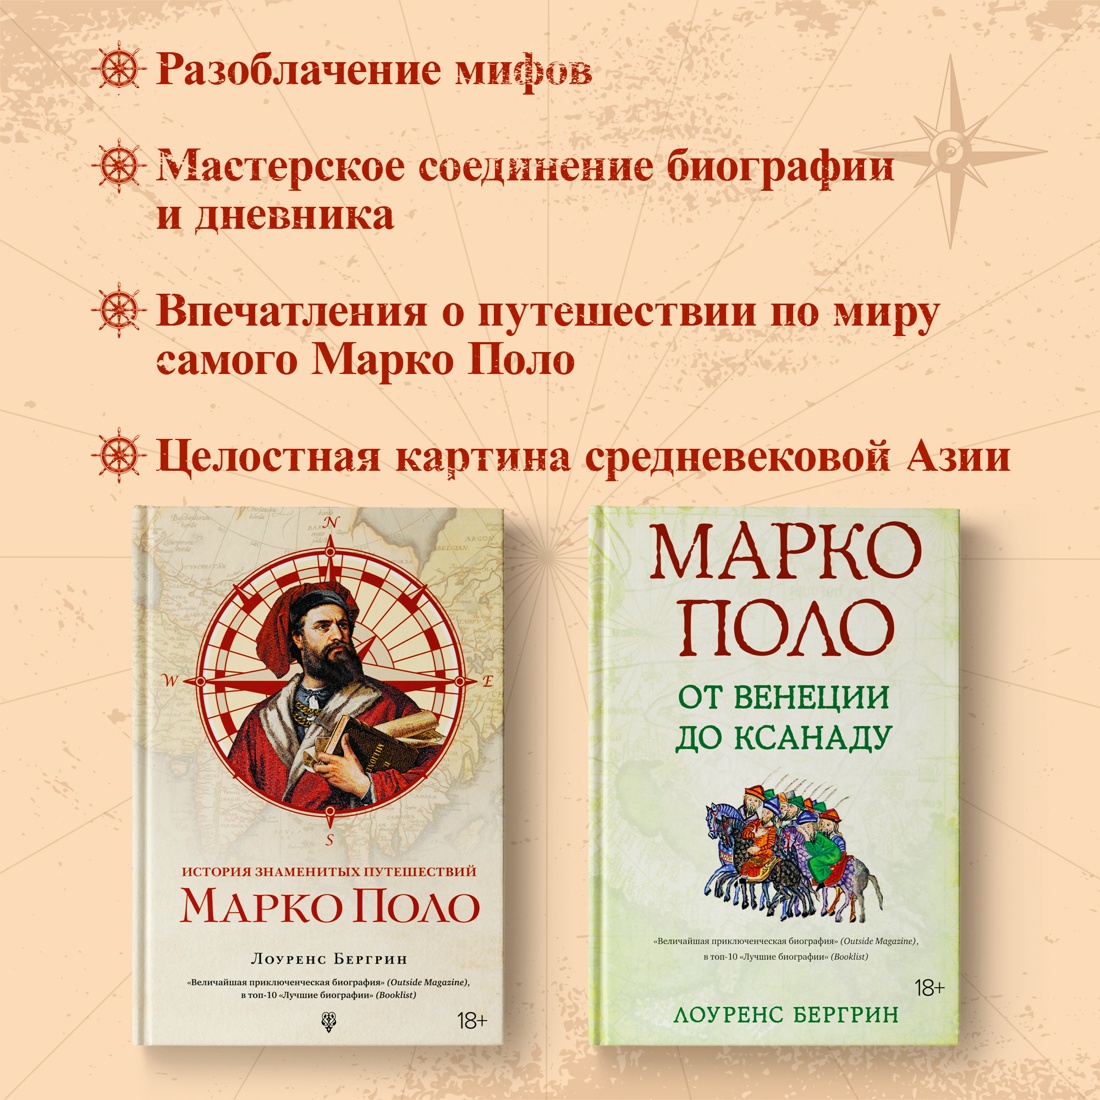 Промо материал к книге "История знаменитых путешествий: Марко Поло" №1